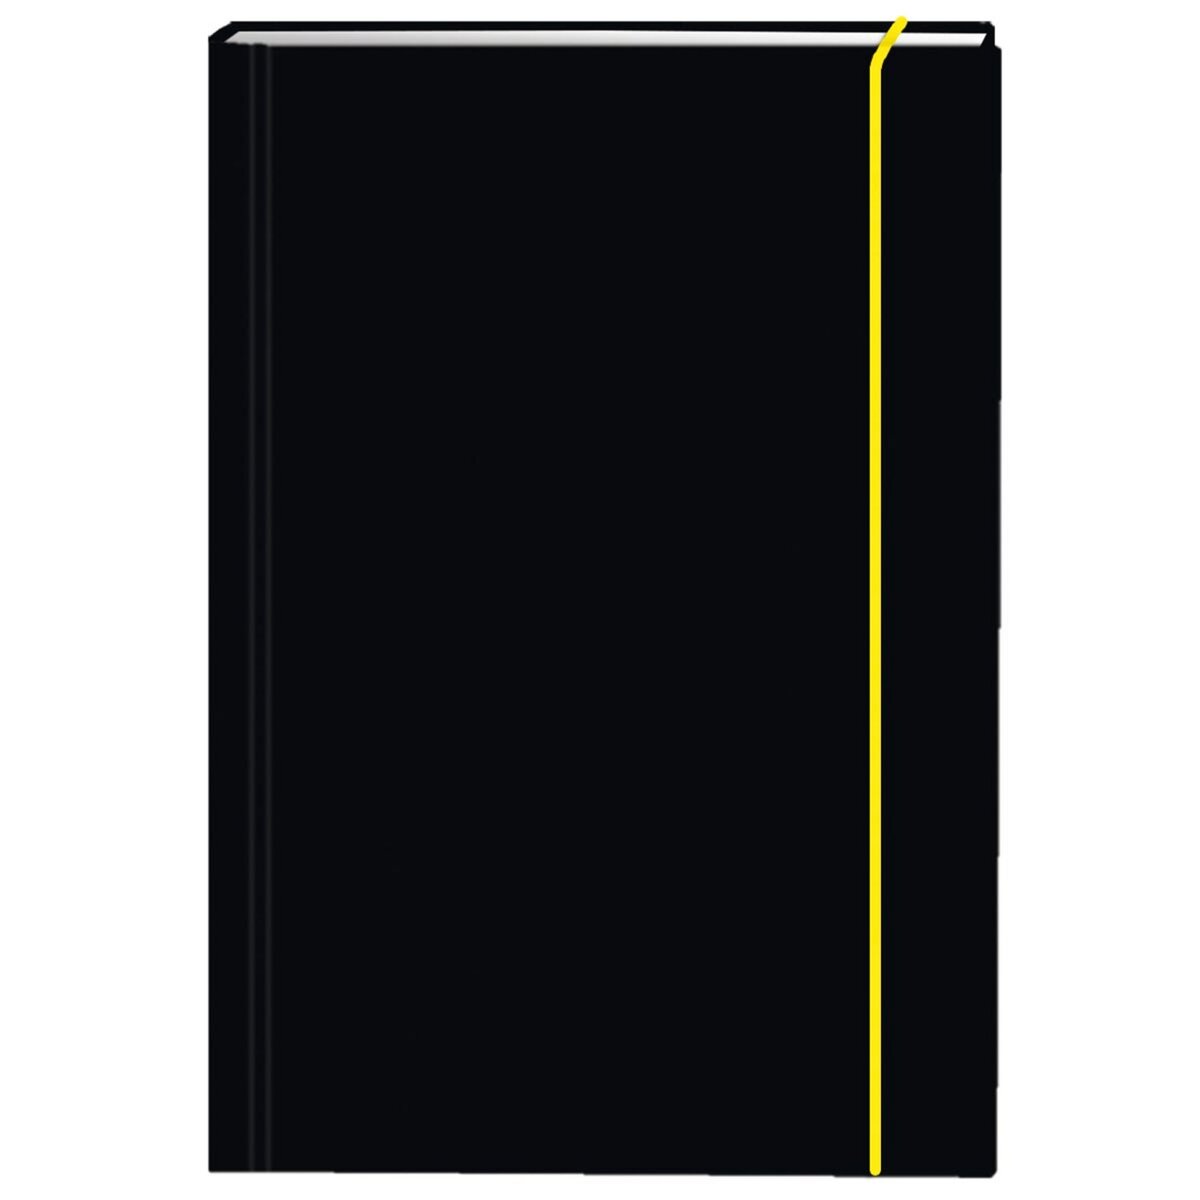  Agenda scolaire journalier 12x17cm - couverture rigide - noir fluo touch jaune 2019-2020